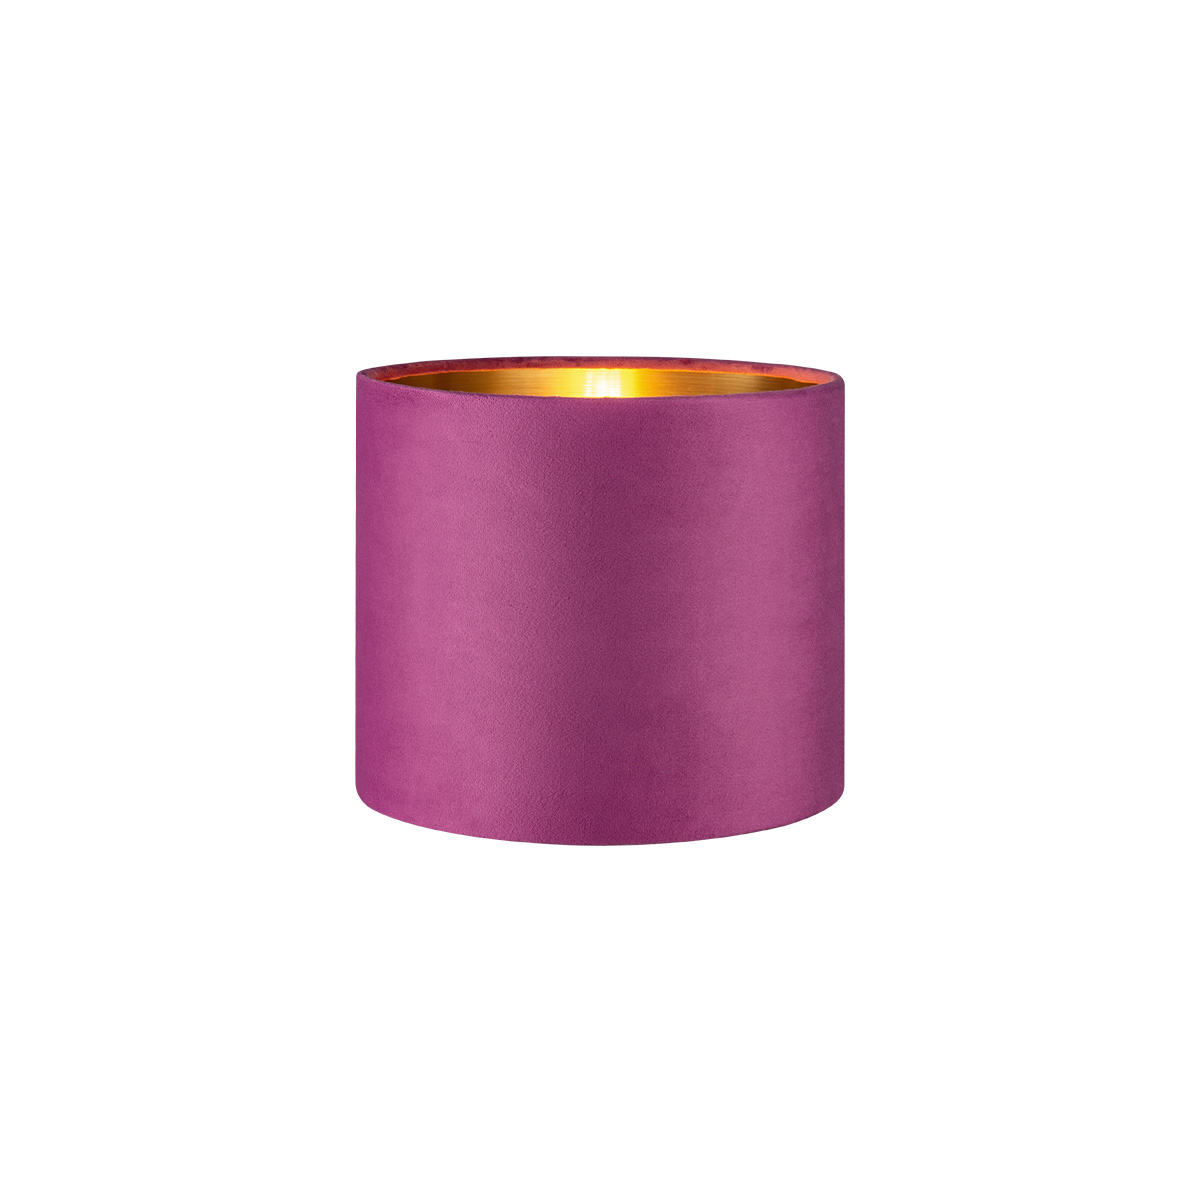 Tangla lighting - TLS7564-20PP - Lampshade - velvet - purple - diameter 20cm - E27